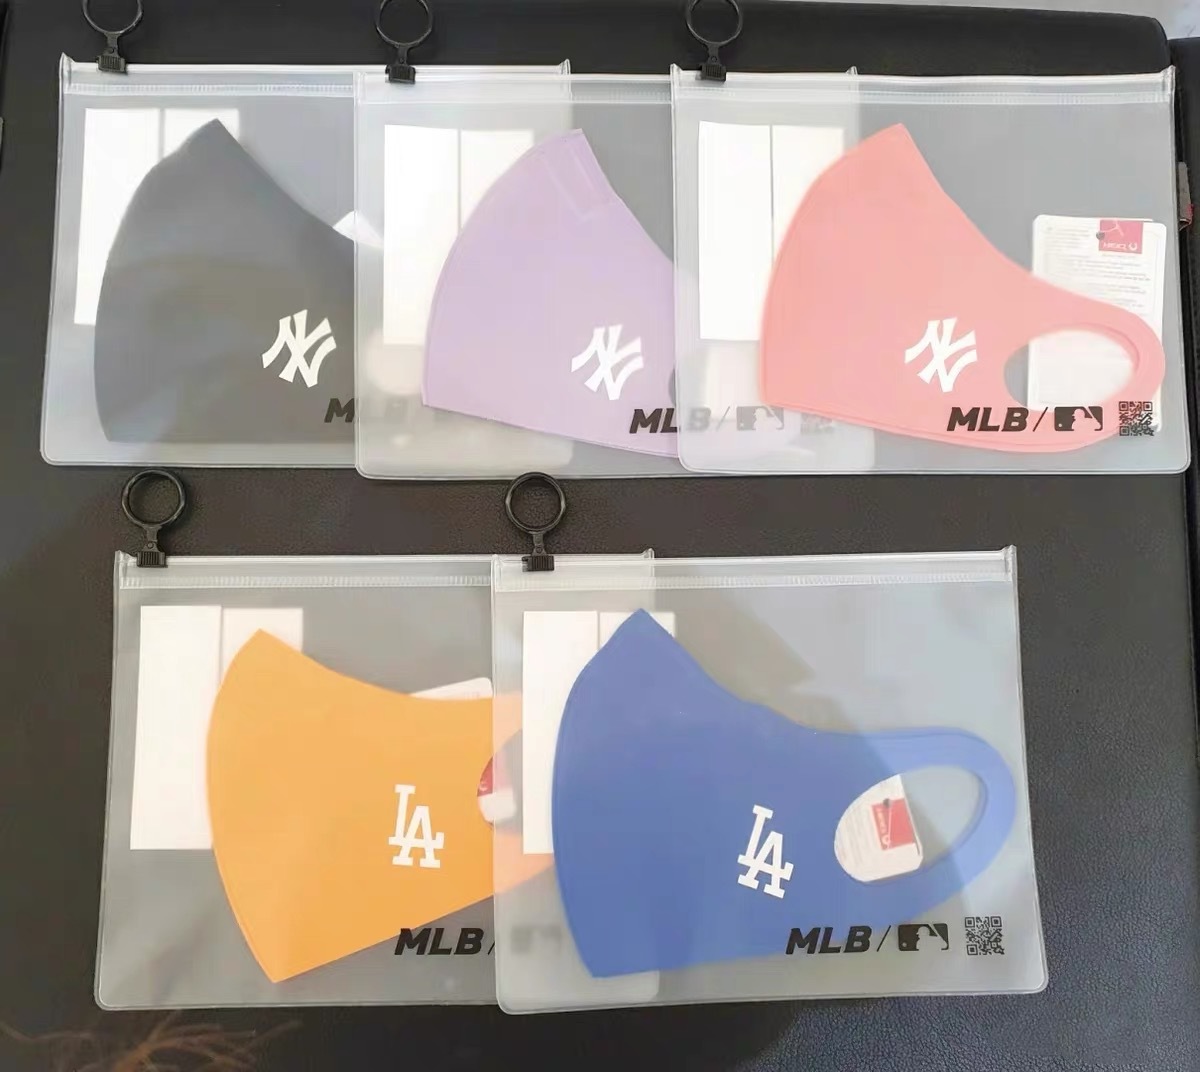 Khẩu trang MLB cotton nguyên chất thoáng khí chống bụi và khói mù in họa tiết NY / LA thời trang Hàn Quốc